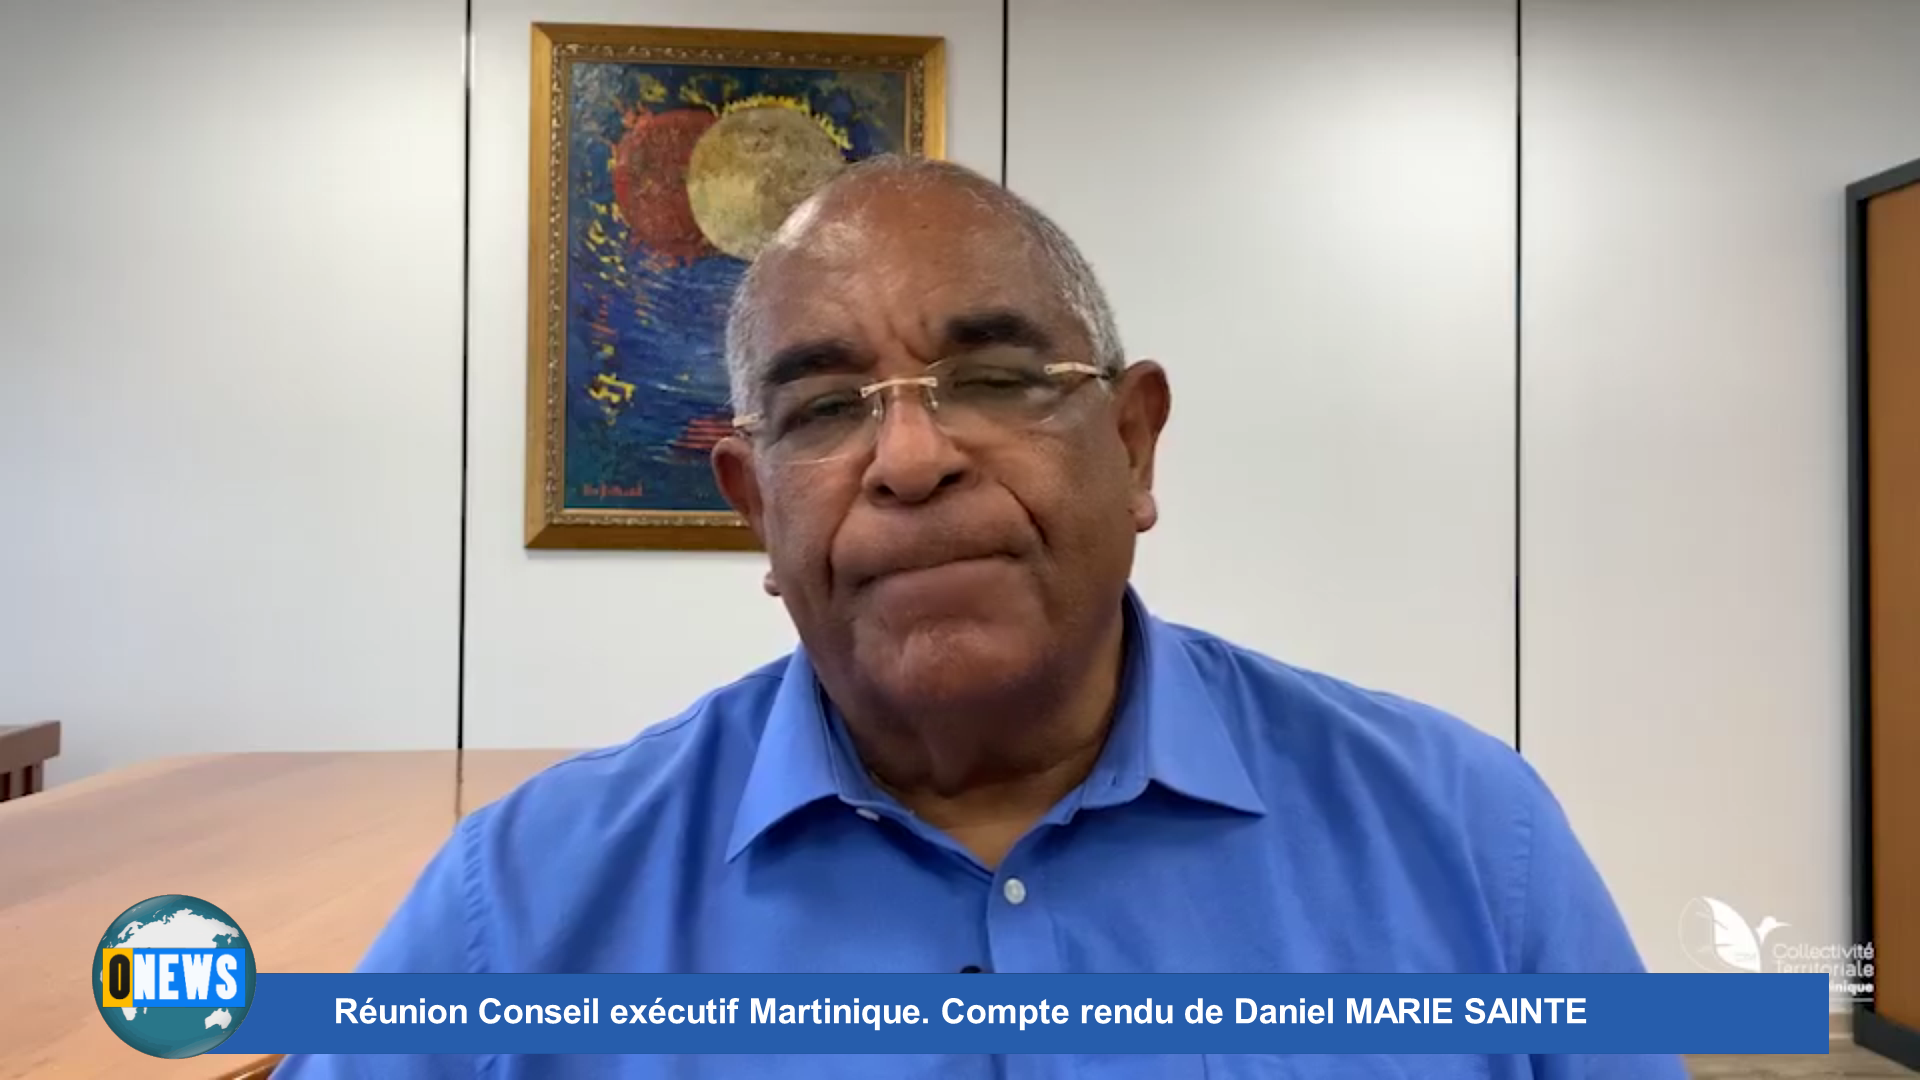 [Vidéo] Onews Martinique. Réunion Conseil exécutif Martinique. Compte rendu de Daniel MARIE SAINTE.